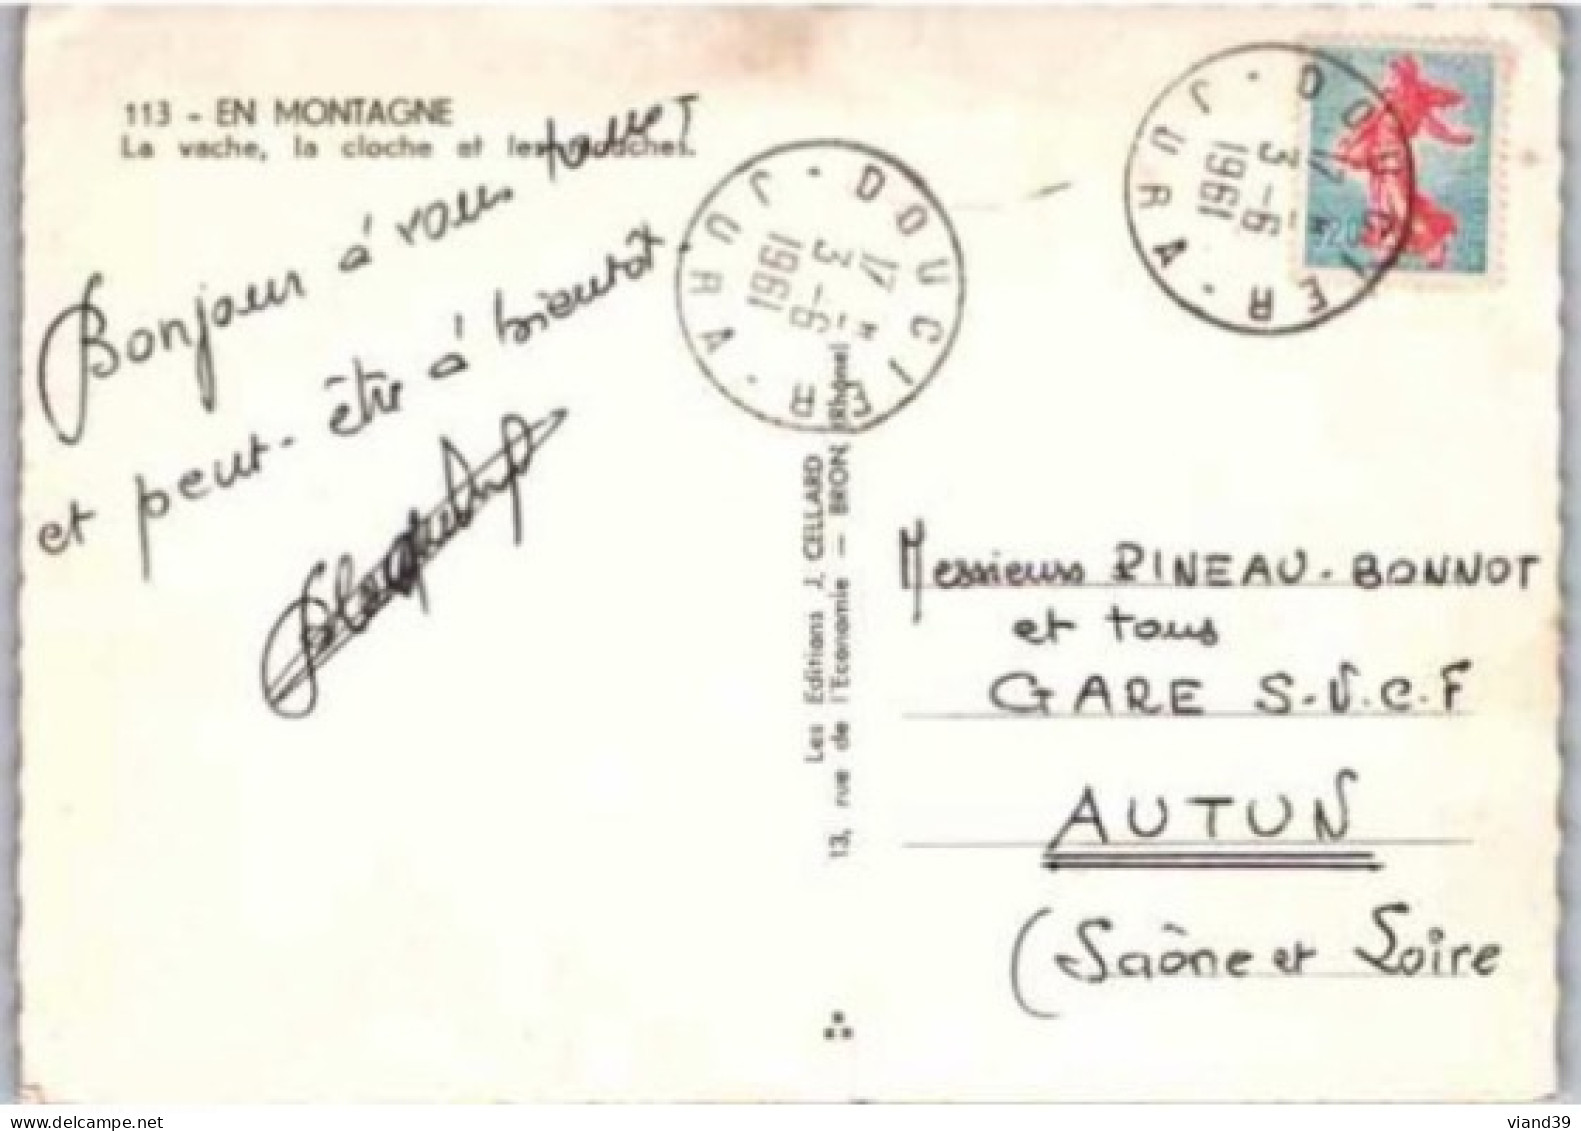 LA VACHE , La Cloche Et Les Mouches. -  En Montagne.   1961. - Cows